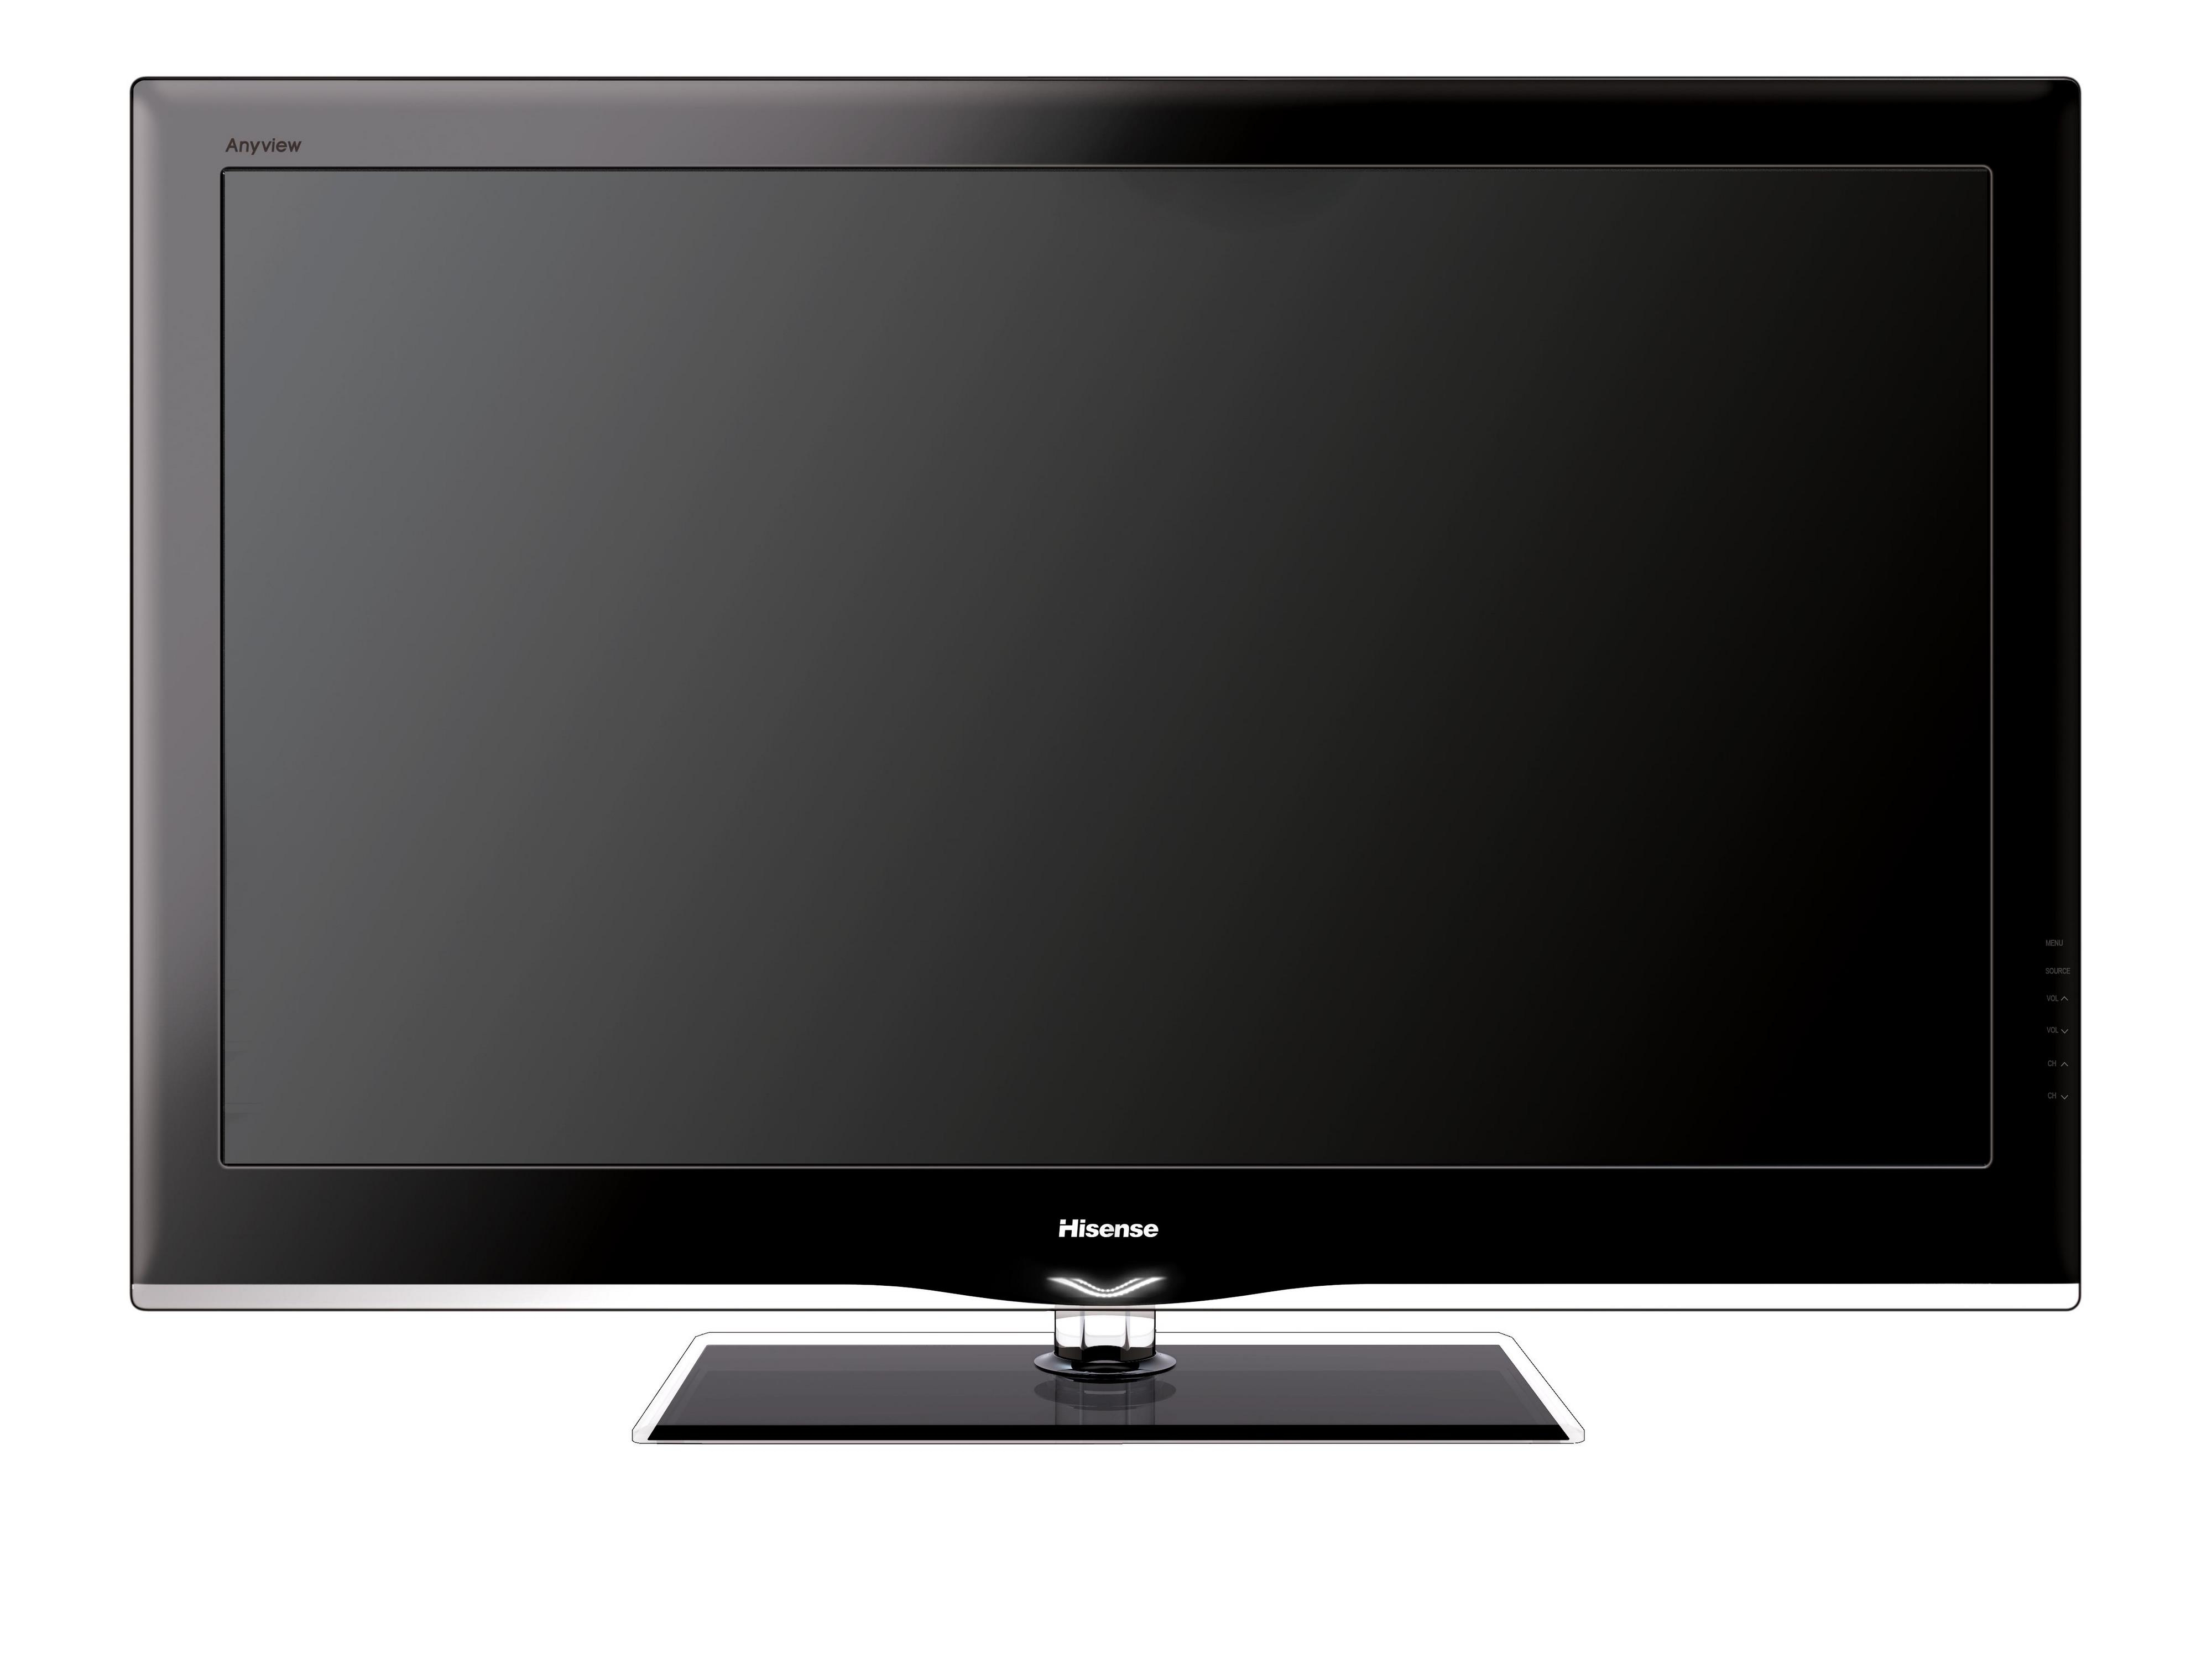 Куплю телевизор в луганске. Телевизор Samsung le-40f96bd 40". Телевизор Samsung le-40a454c1 40". Samsung PS-50p96fd. Телевизор Hisense 32 дюйма.